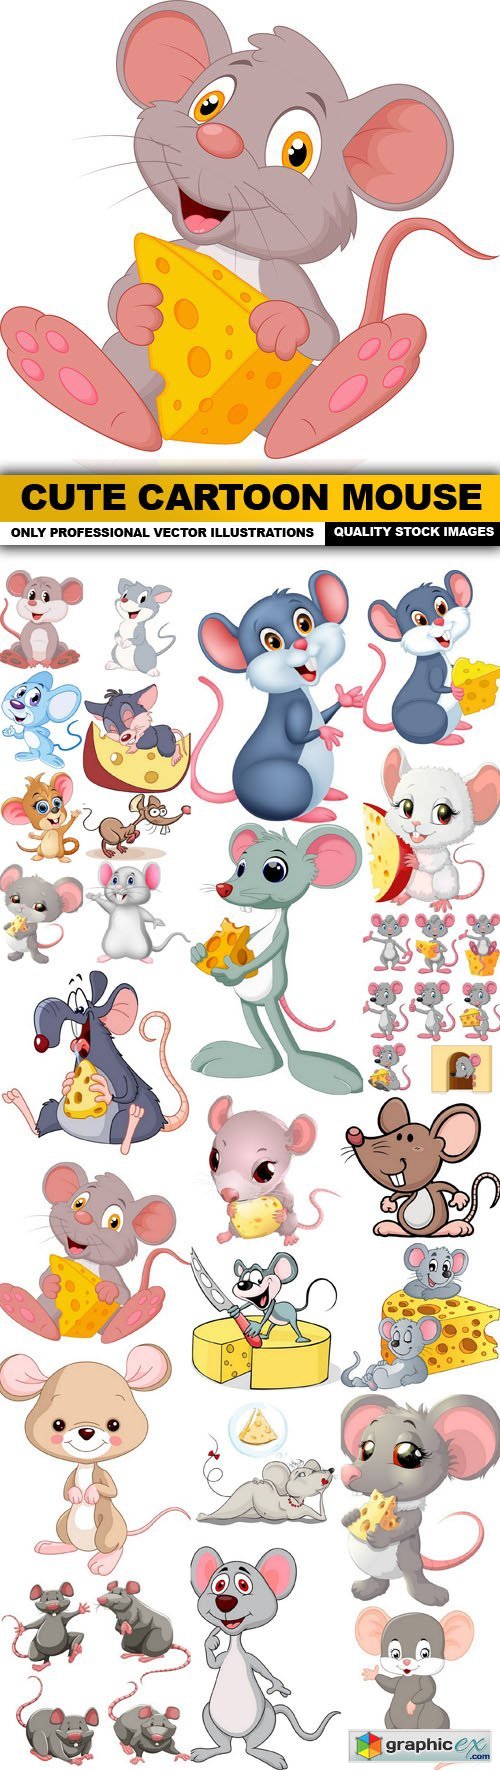 Cute Cartoon Mouse - 25 Vector